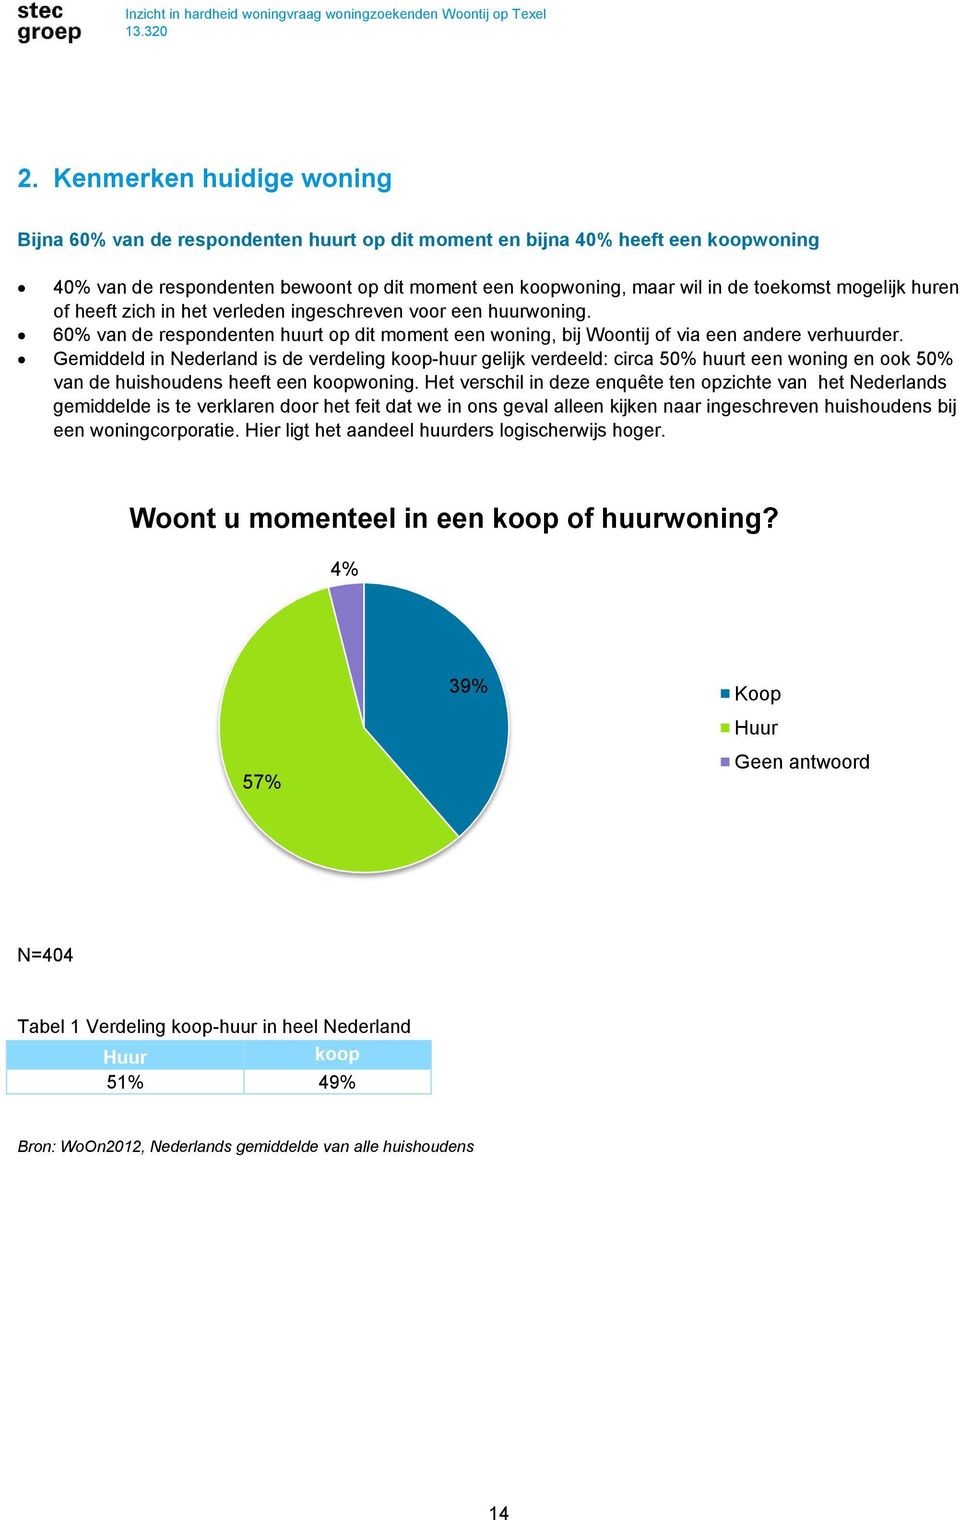 Gemiddeld in Nederland is de verdeling koop-huur gelijk verdeeld: circa 50% huurt een woning en ook 50% van de huishoudens heeft een koopwoning.